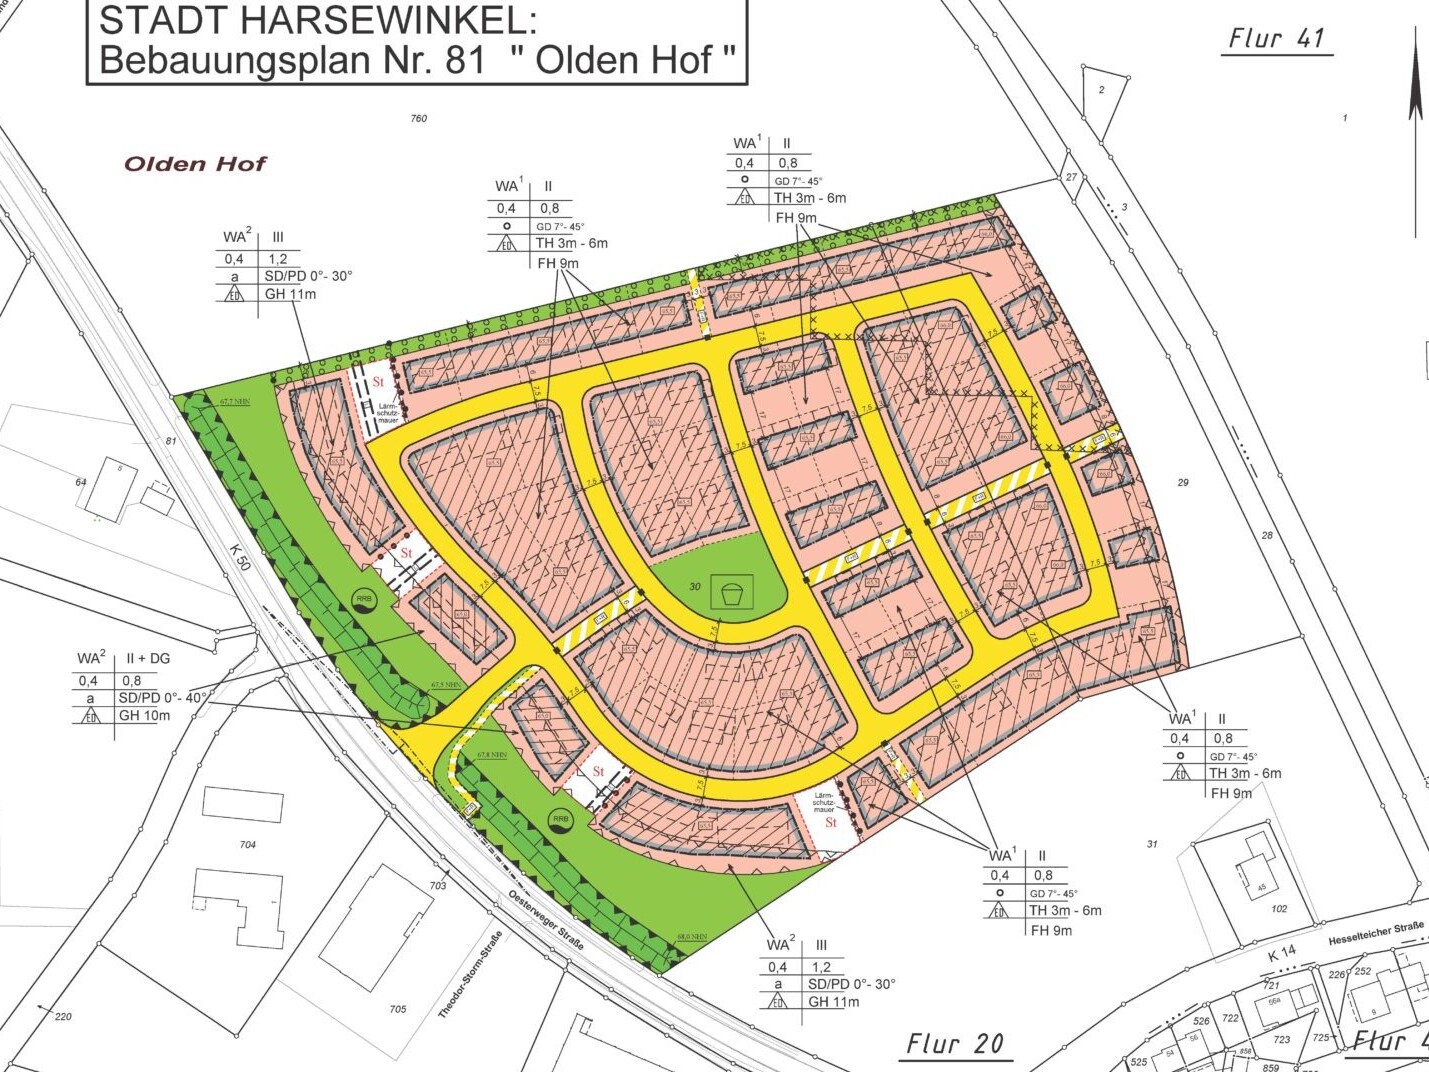 Planzeichnung Bebaungsplan Nr. 81 "Olden Hof" der Stadt Harsewinkel